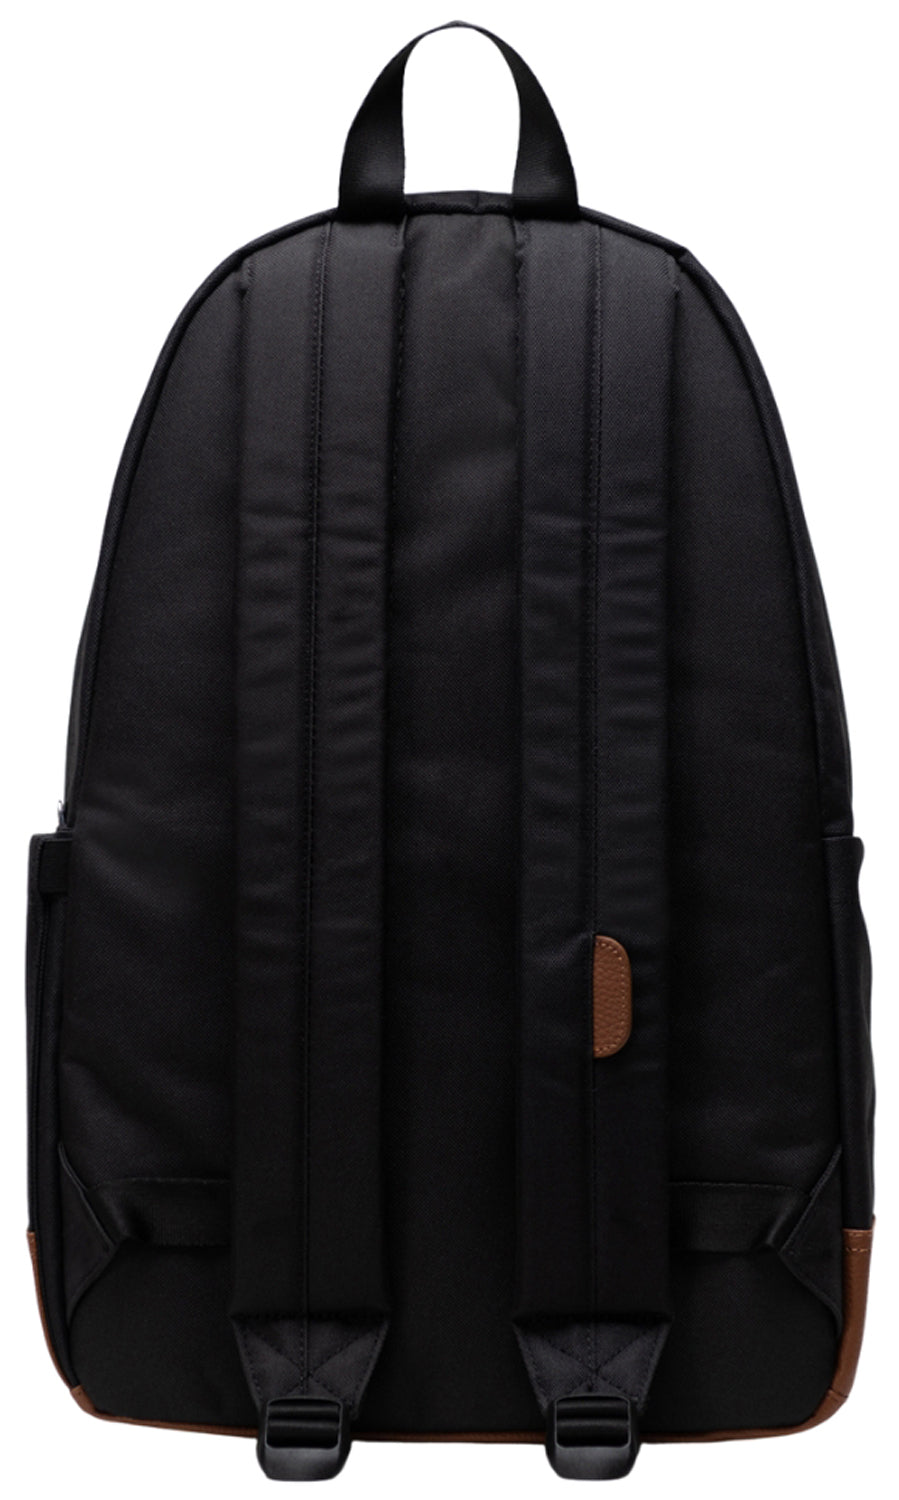 Herschel Heritage Backpack - Black / Tan